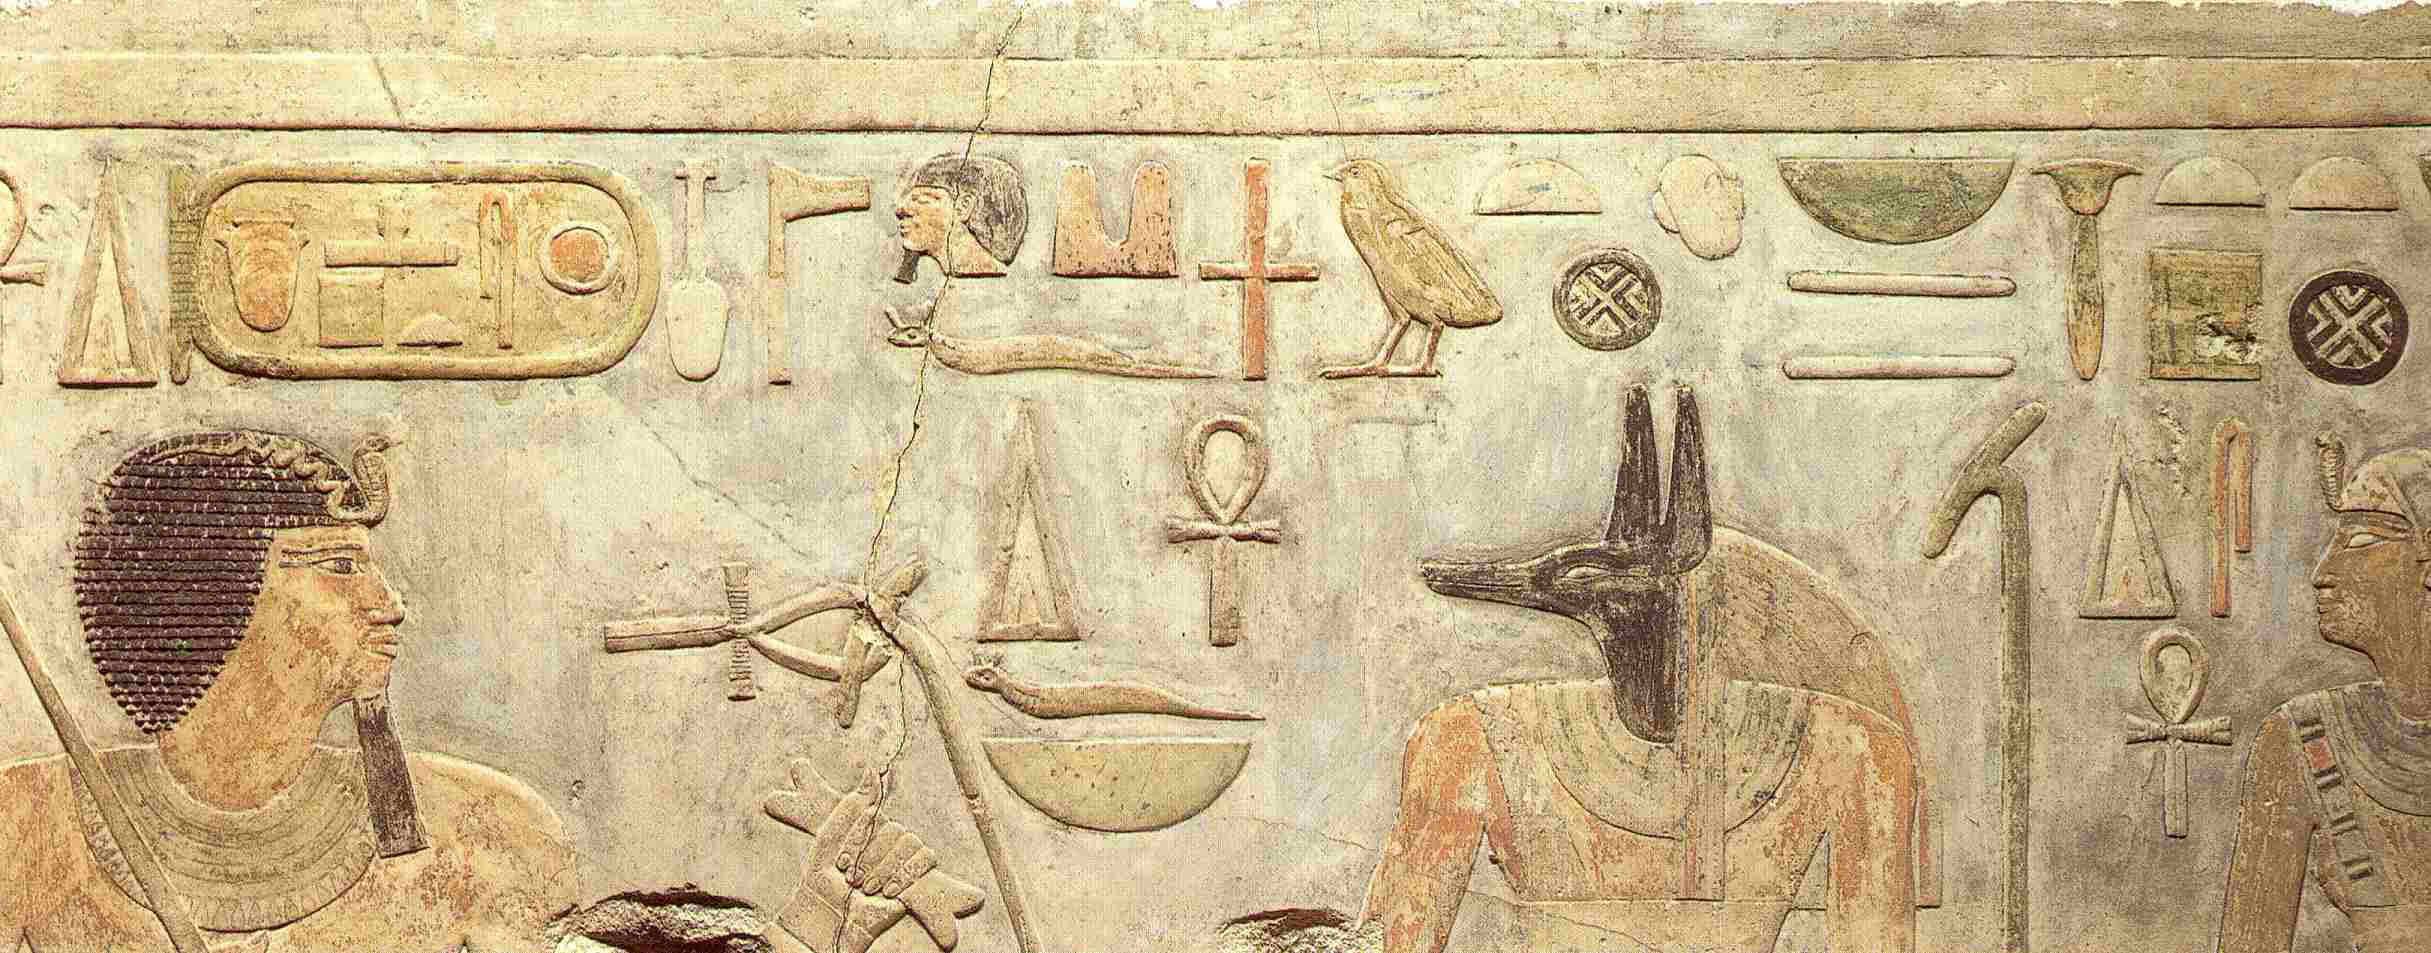 La vida en el antiguo Egipto Dinastía 11 b